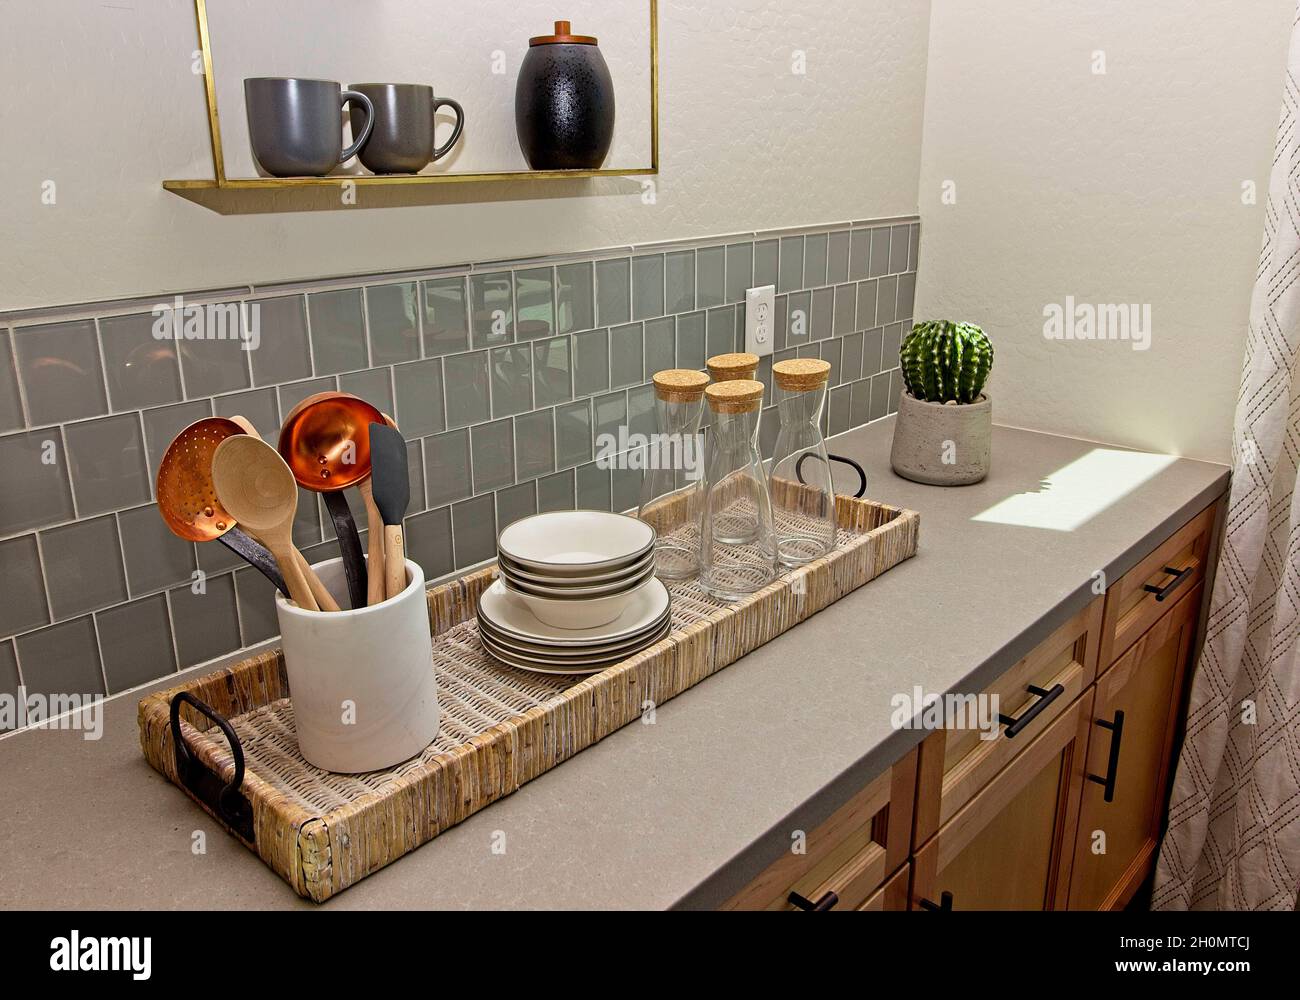 Panier de cuisine en osier avec ustensiles, vaisselle et décanteurs en verre Banque D'Images